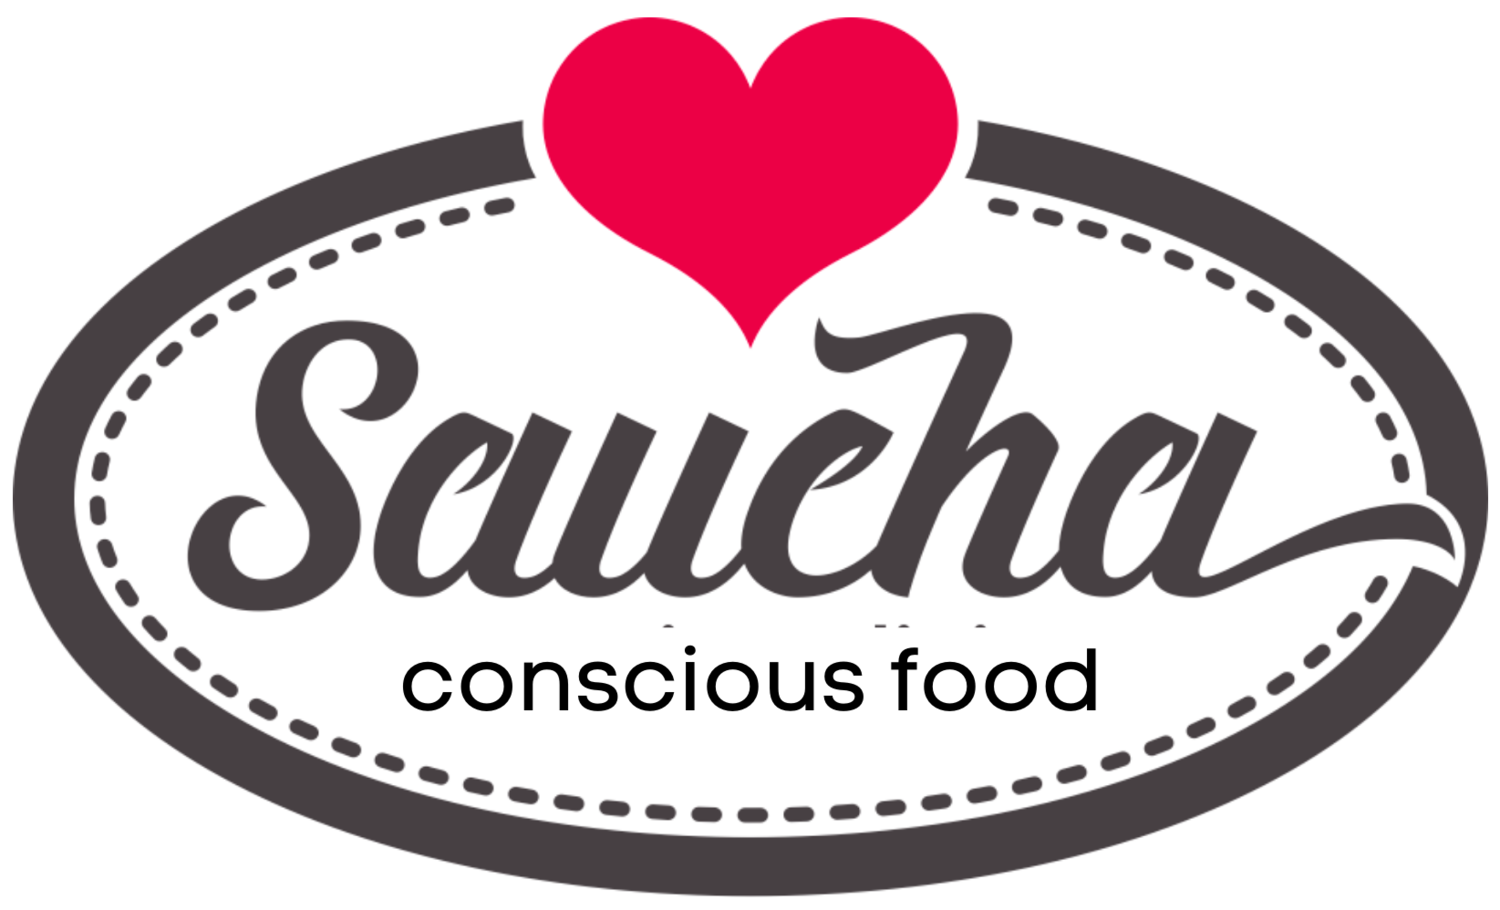 Saucha conscious food